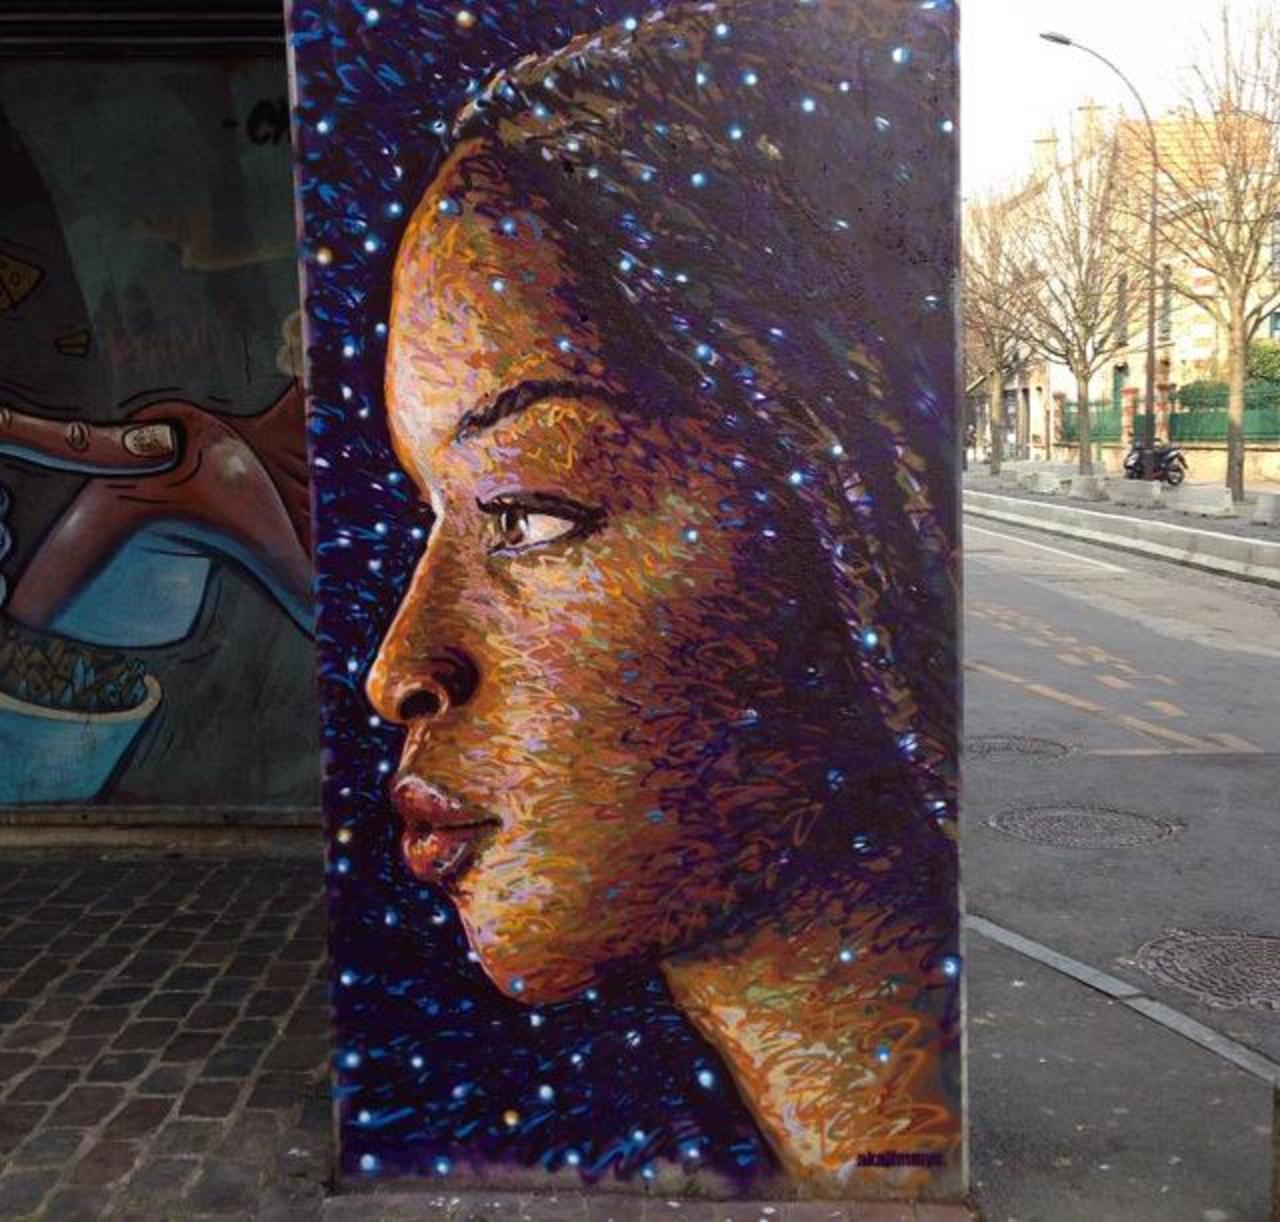 Street Art by Jimmy C in Vitry sur Seine, Paris

#art #arte #graffiti #streetart http://t.co/oV8UnddocC